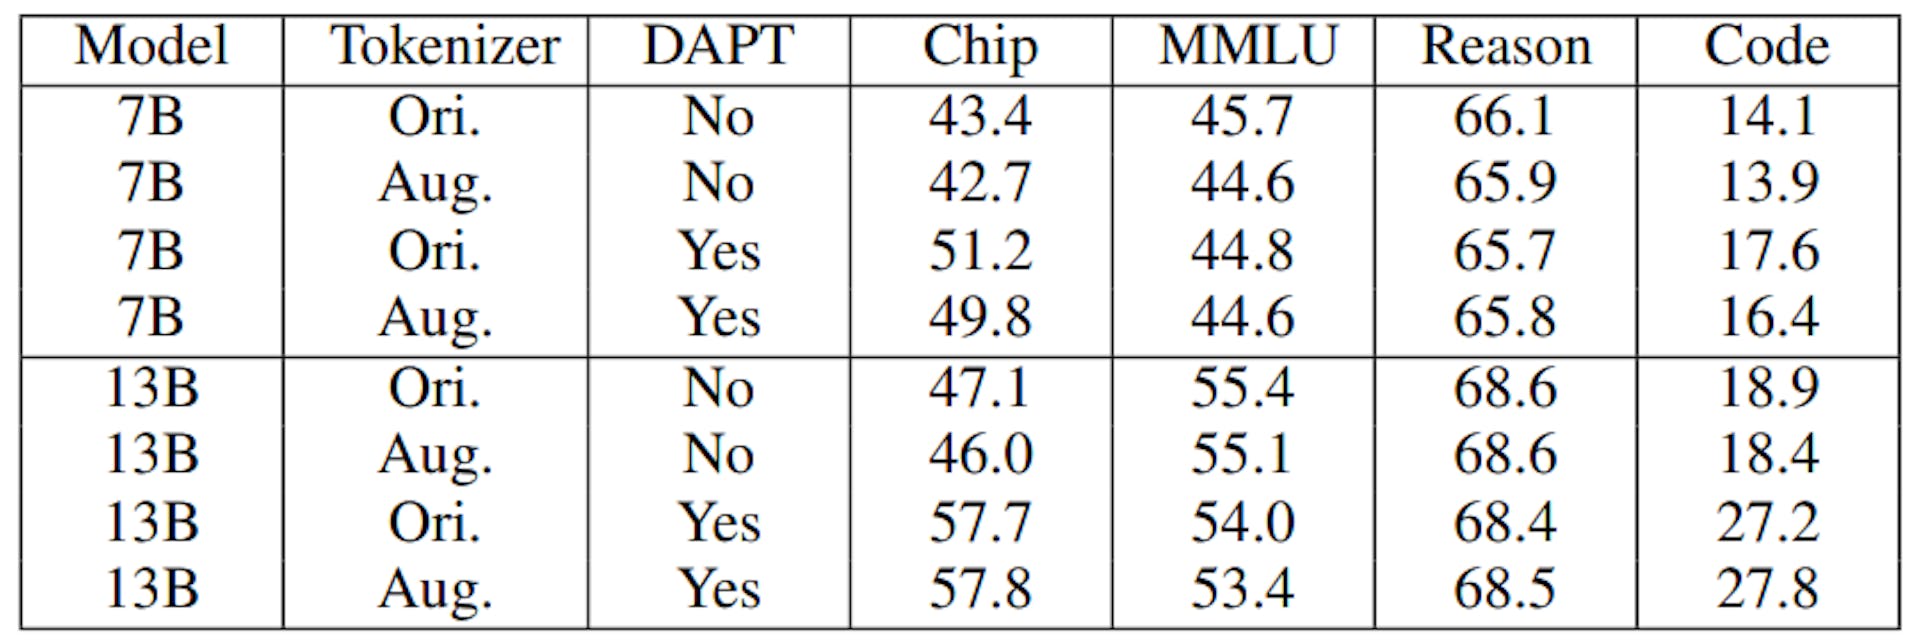 TABLA IX: Resultados de la evaluación de modelos ChipNeMo con Diferentes Tokenizers. Agosto indica tokenizador aumentado y Ori. indicar que se utiliza el tokenizador original LLaMA2. El uso de tokenizador aumentado sin DAPT corresponde a la inicialización del modelo como en la Sección III-A.